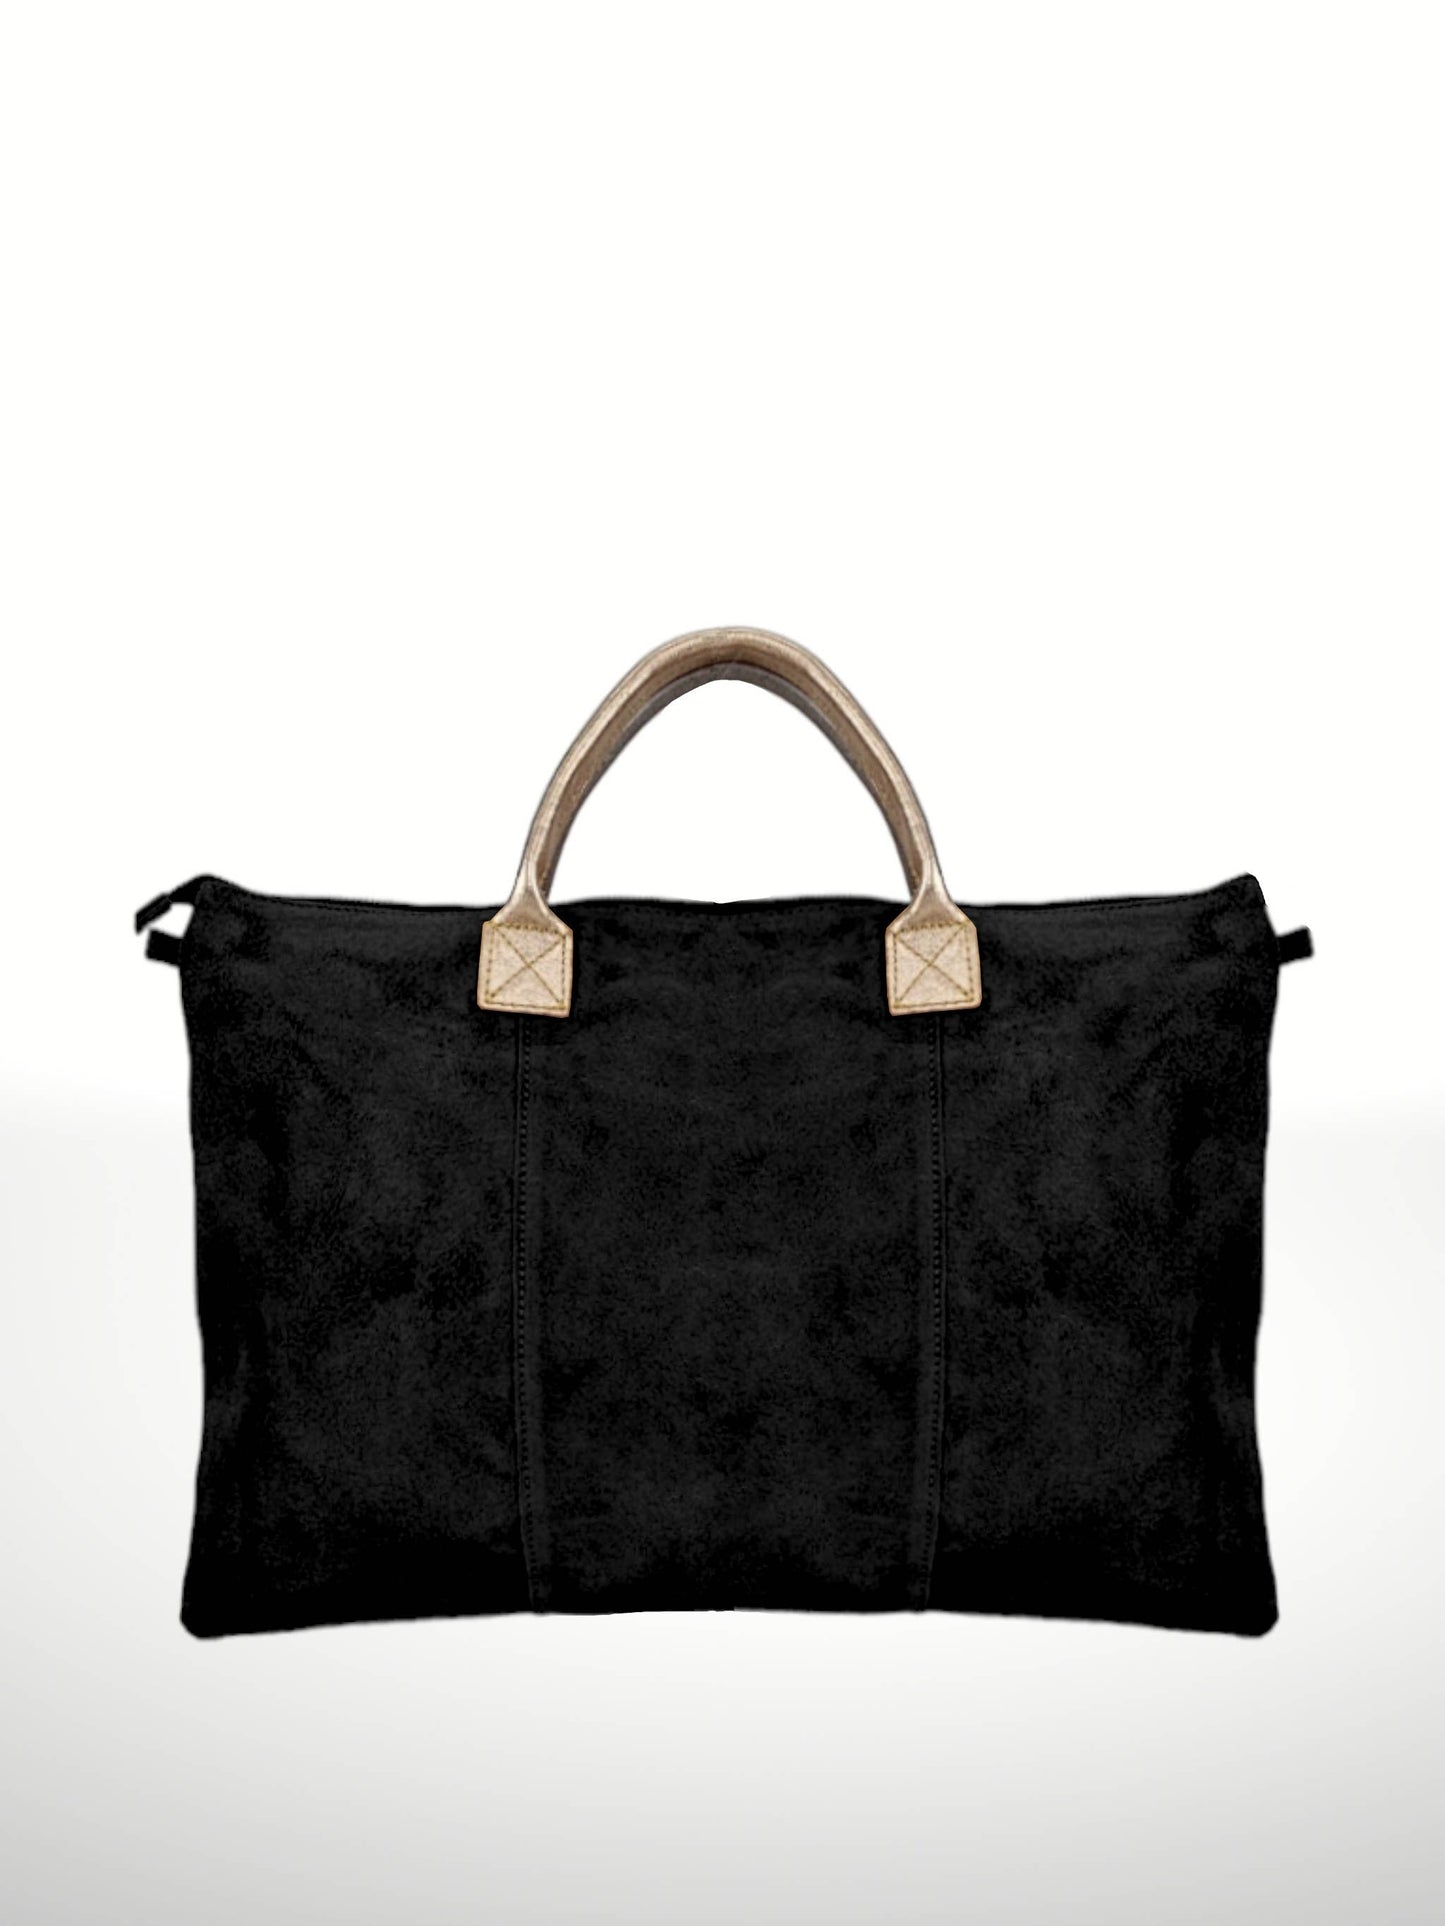 Milano met suede leather bags/: Black